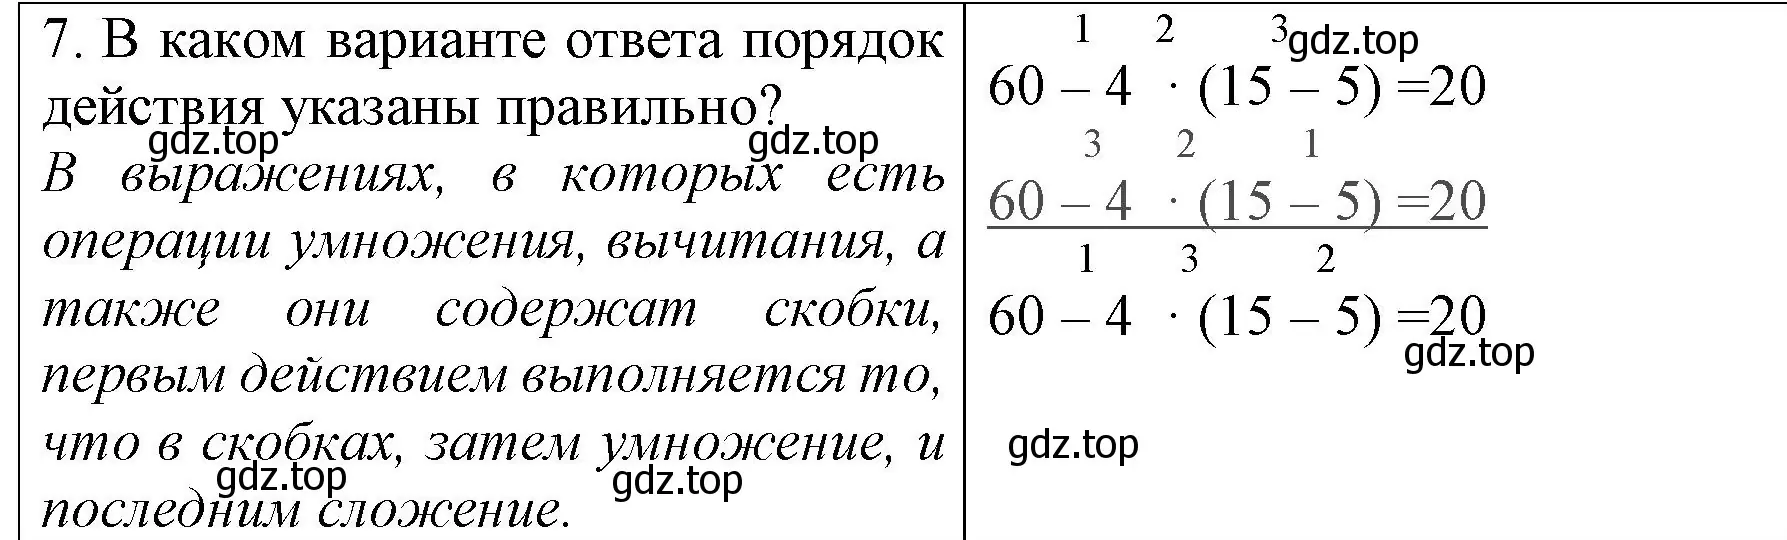 Решение номер 7 (страница 31) гдз по математике 3 класс Моро, Бантова, учебник 1 часть